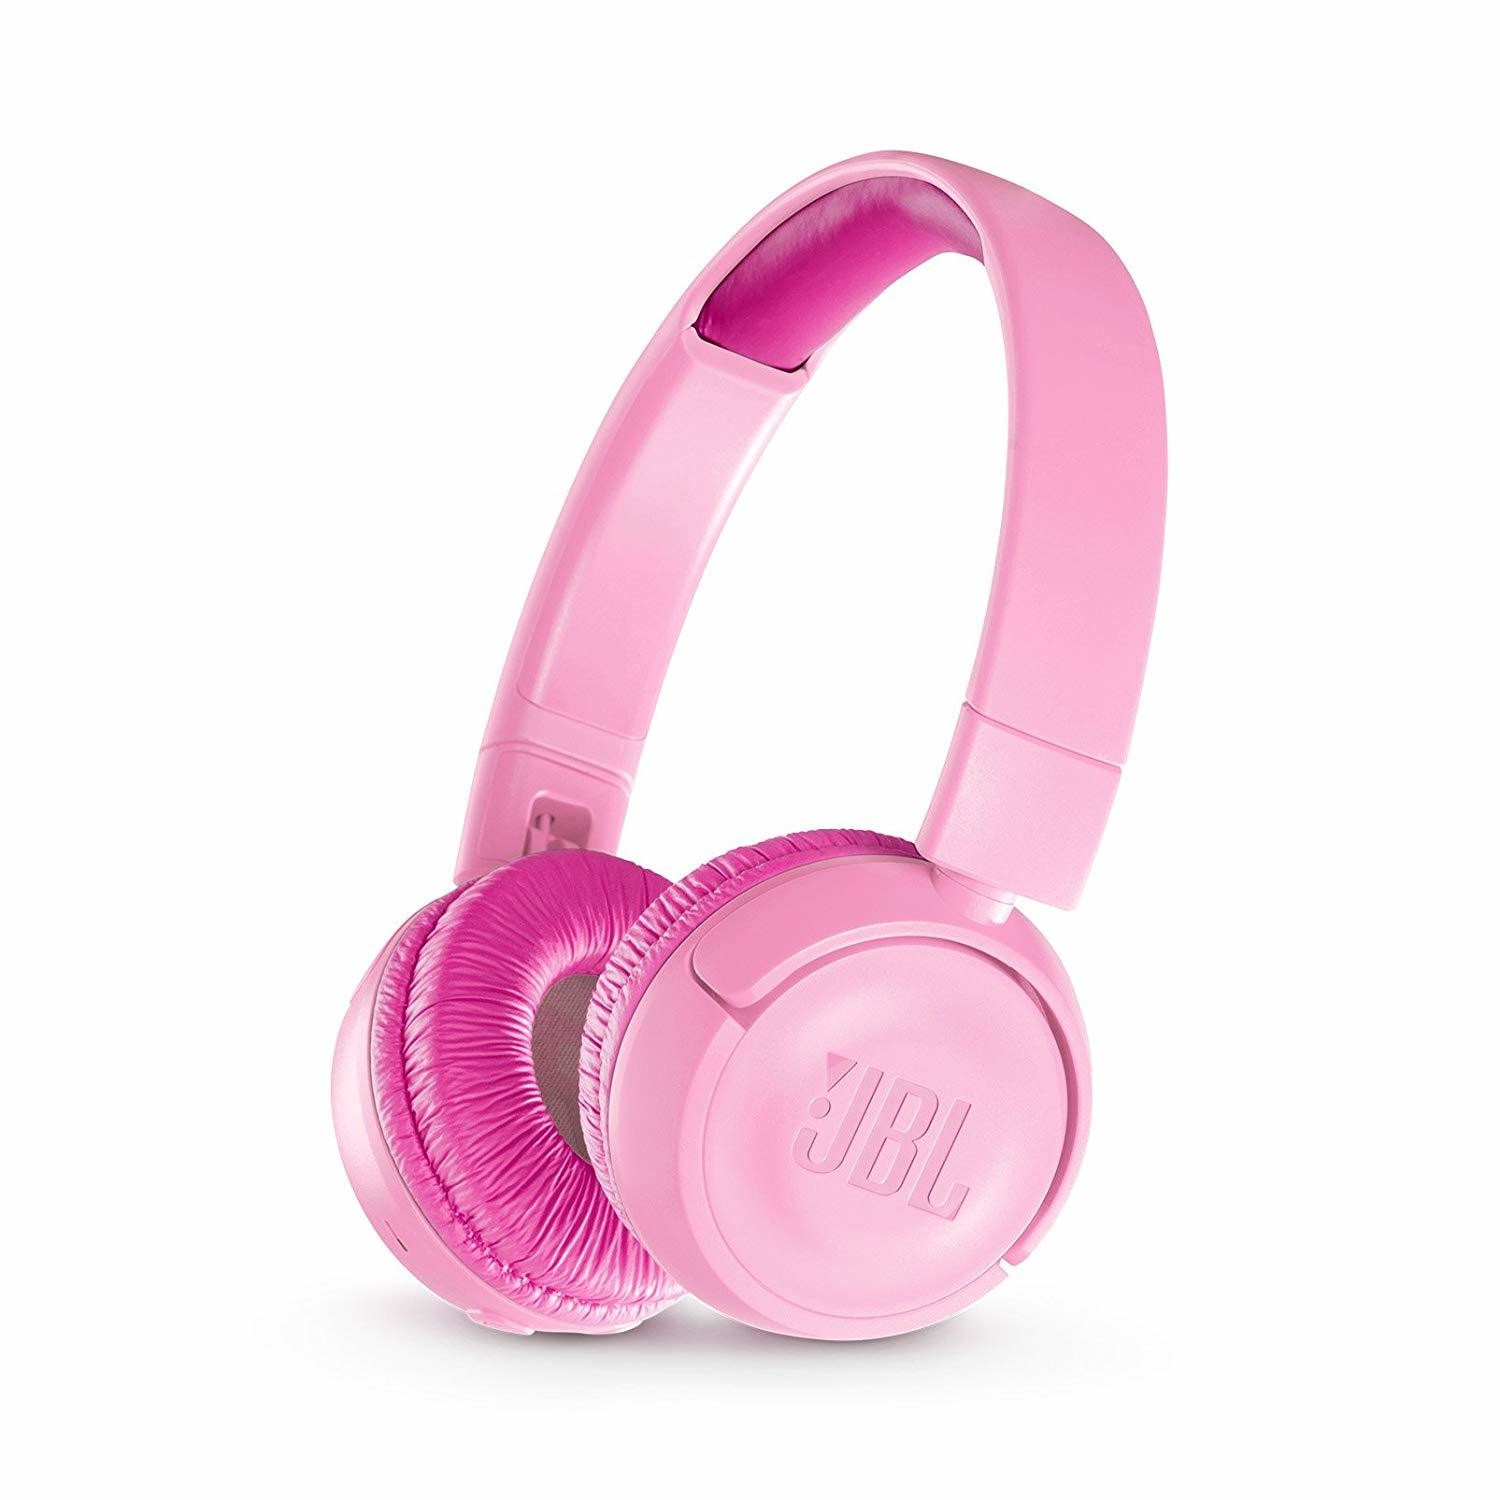 JBL JR300BT Kids Wireless on-ear headphones, Pink